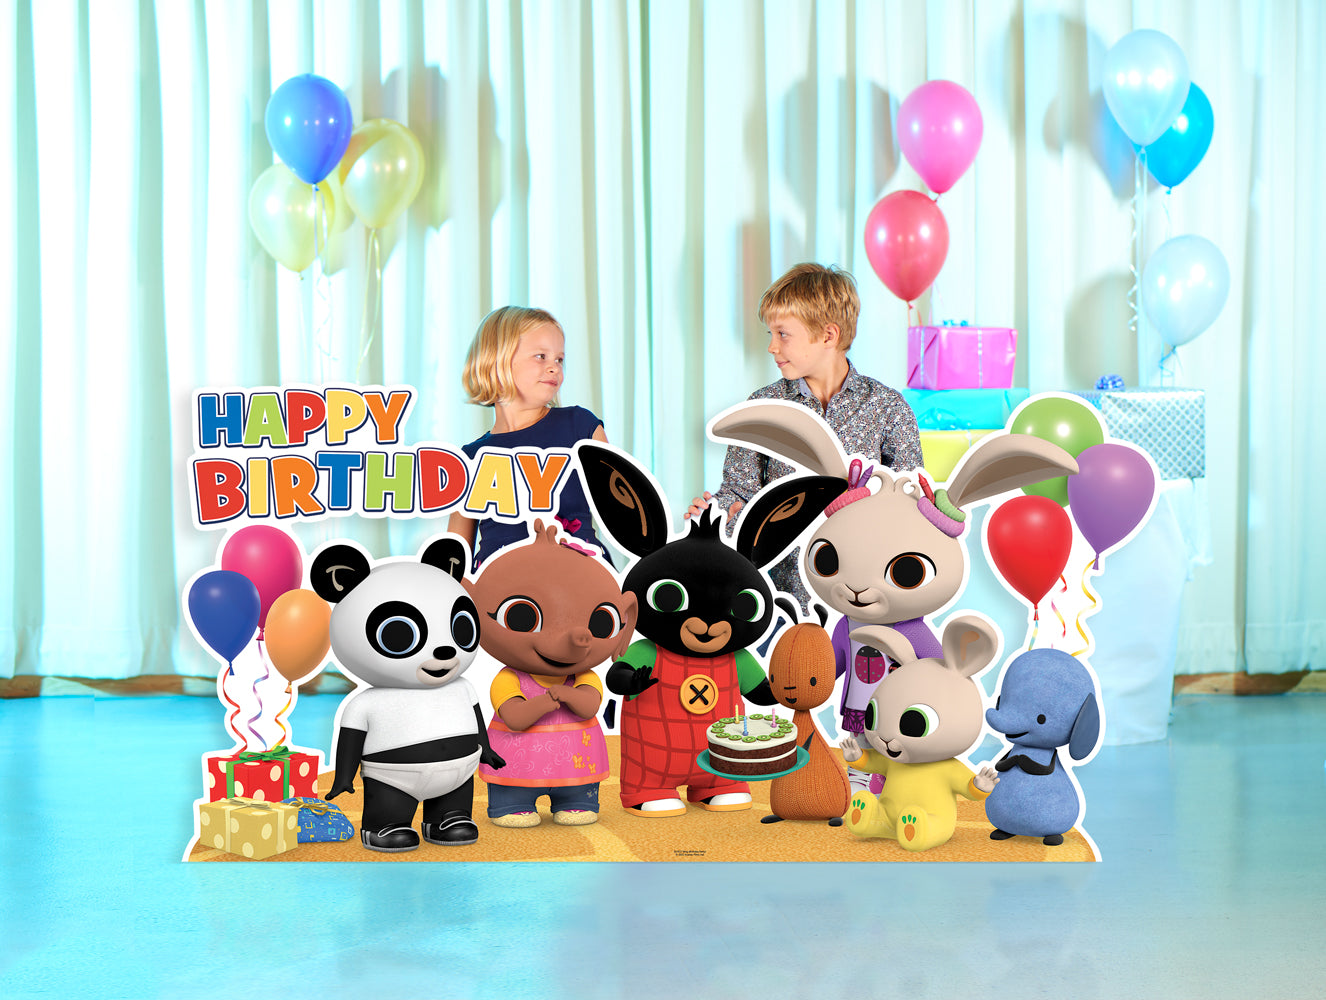 Bing Birthday Party Cardboard Cutout